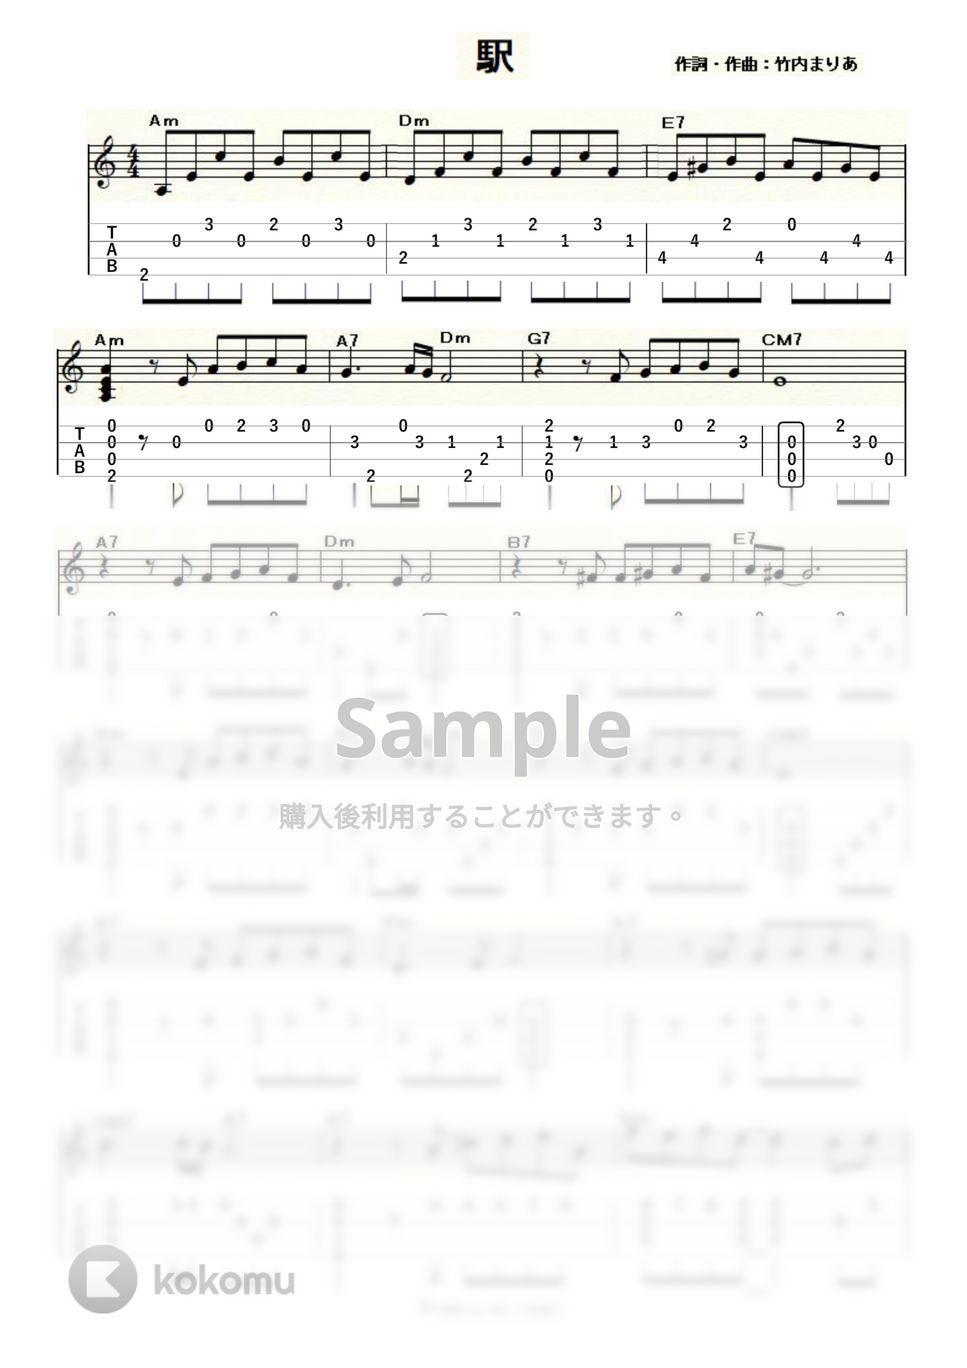 竹内まりや - 駅 (ｳｸﾚﾚｿﾛ / Low-G / 中級) by ukulelepapa